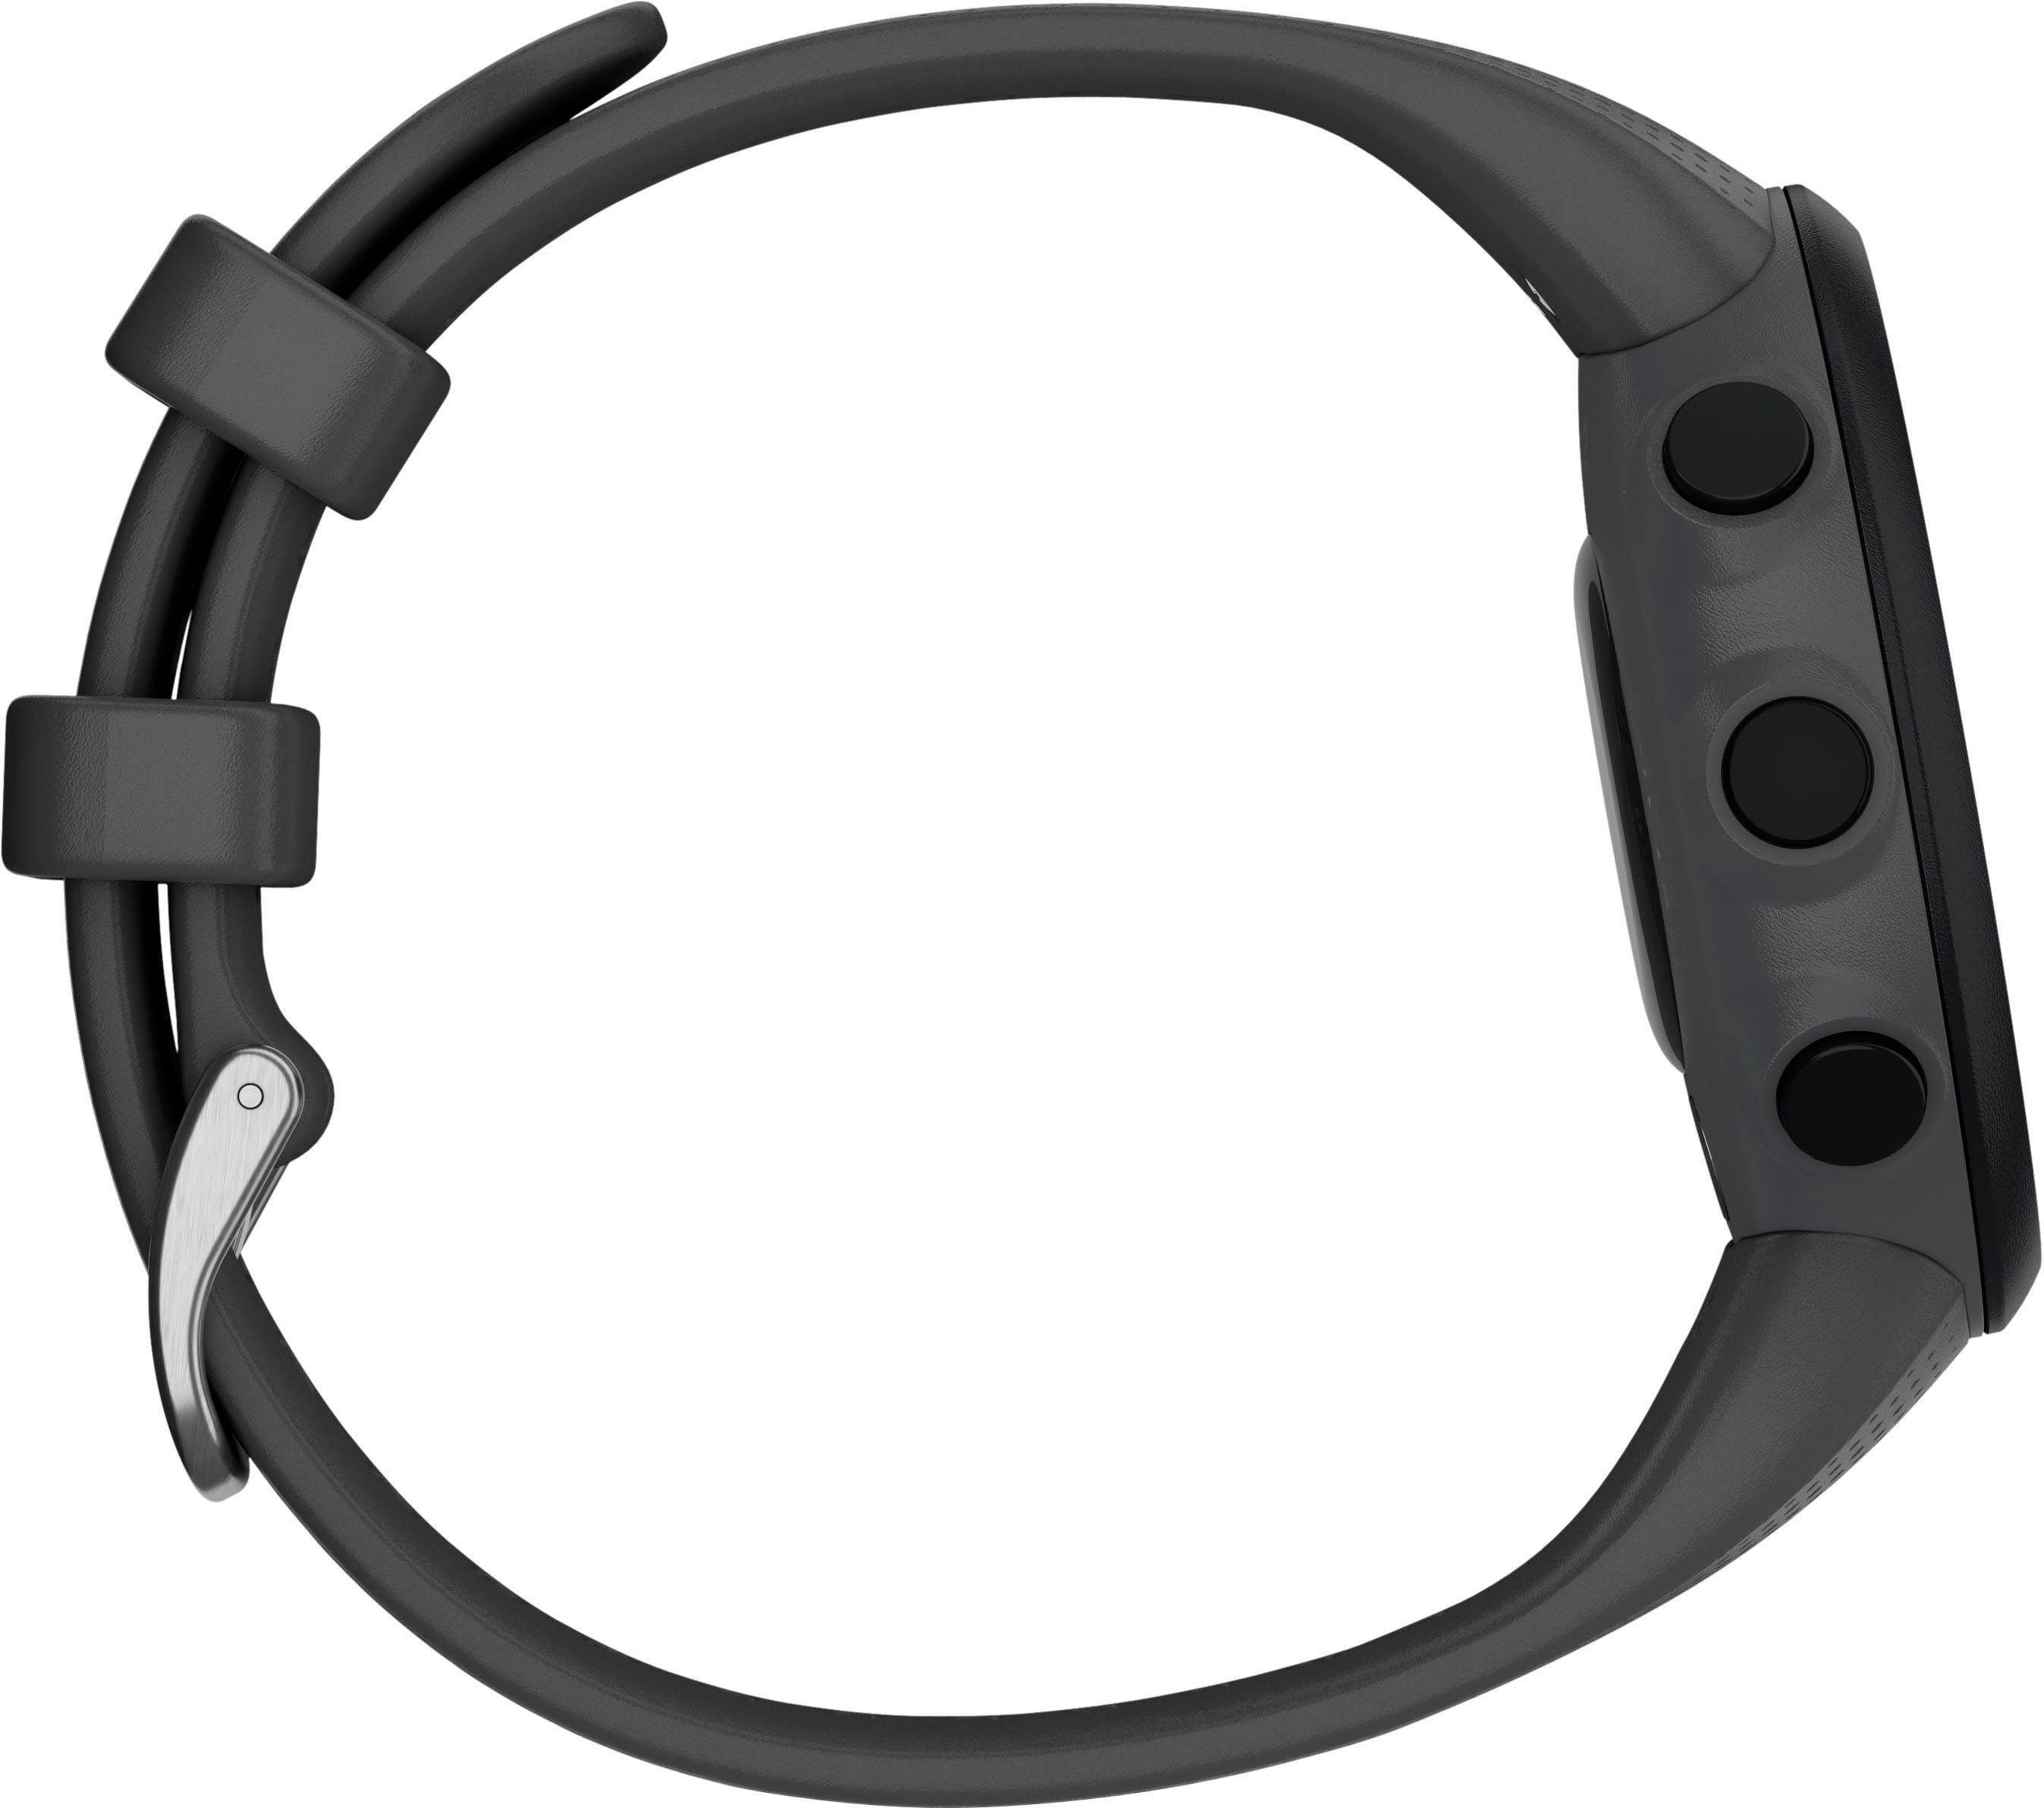 Garmin Swim2 mit Silikon-Armband 20 mm Smartwatch (2,63 cm/1,04 Zoll),  Standby-Akkulaufzeit bis zu 7 Tage, mit GPS Akkulaufzeit bis 13 Stunden